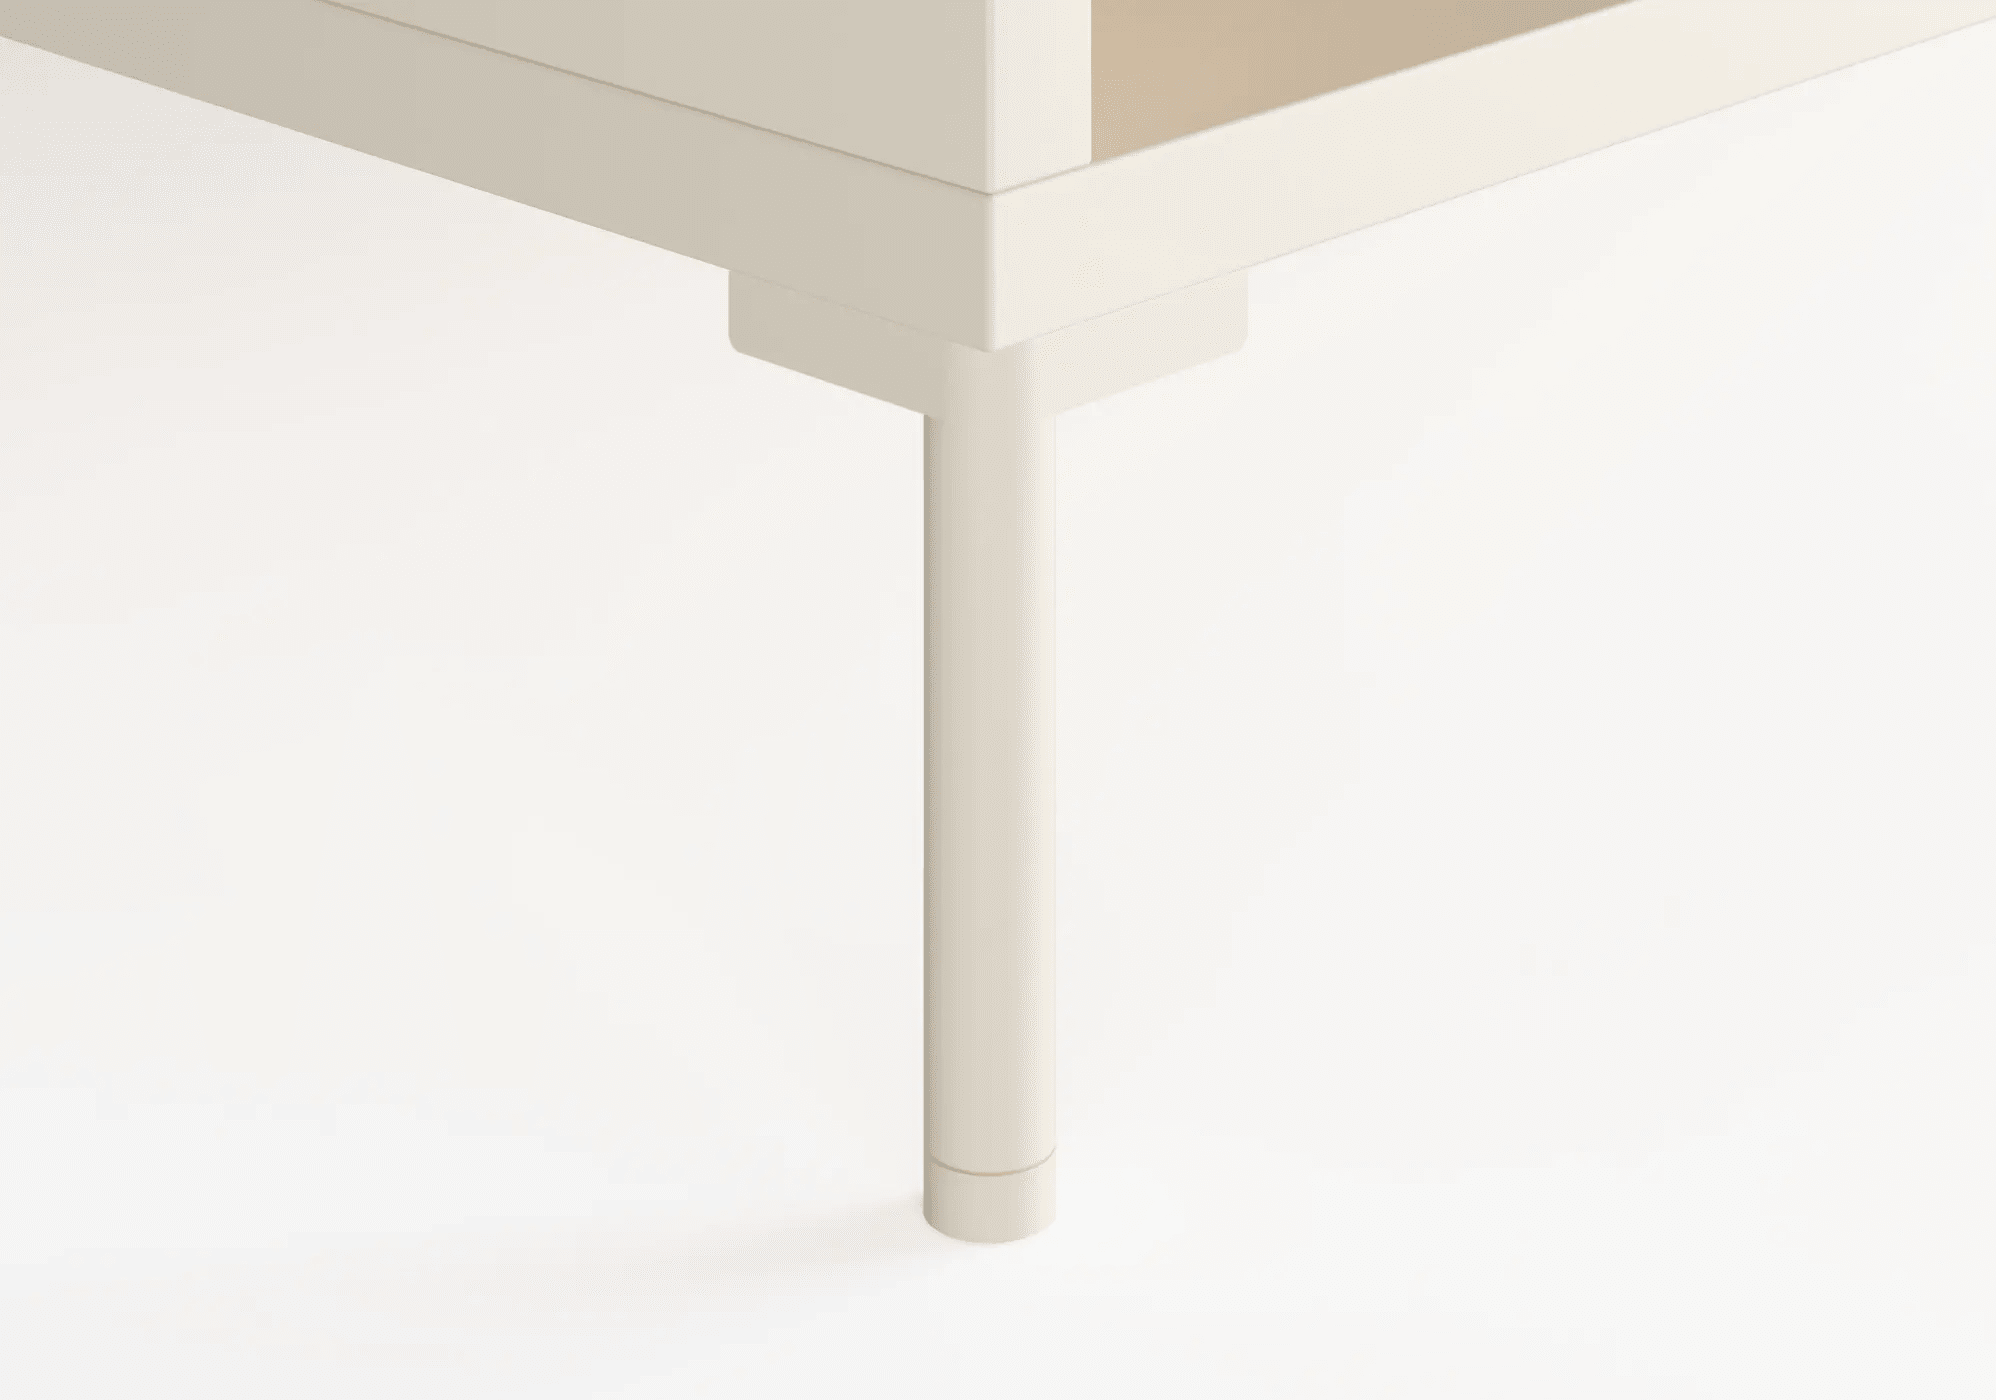 Grosser Cremebeige Nachttisch mit Schubladen, Ruckwanden und Beine - 78x53x40cm 8